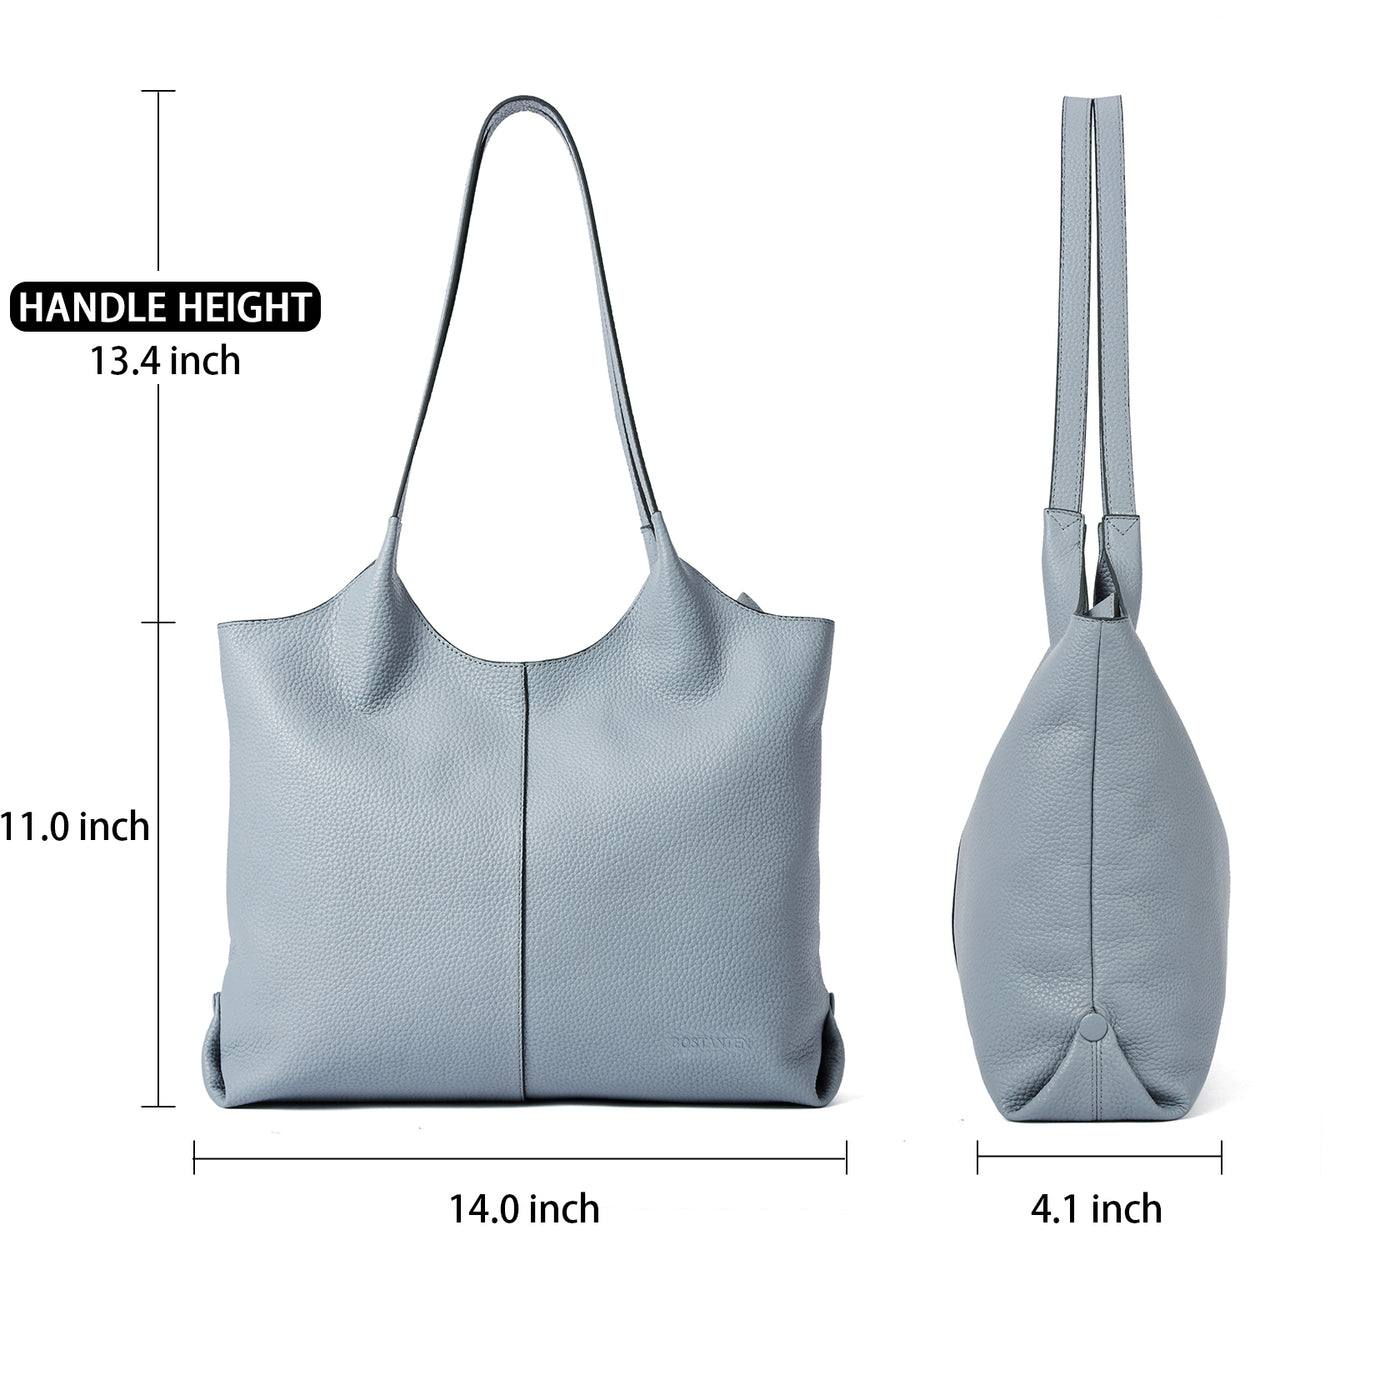 Morava Versatile and Elegant Handbags for Any Occasion | Bostanten ...